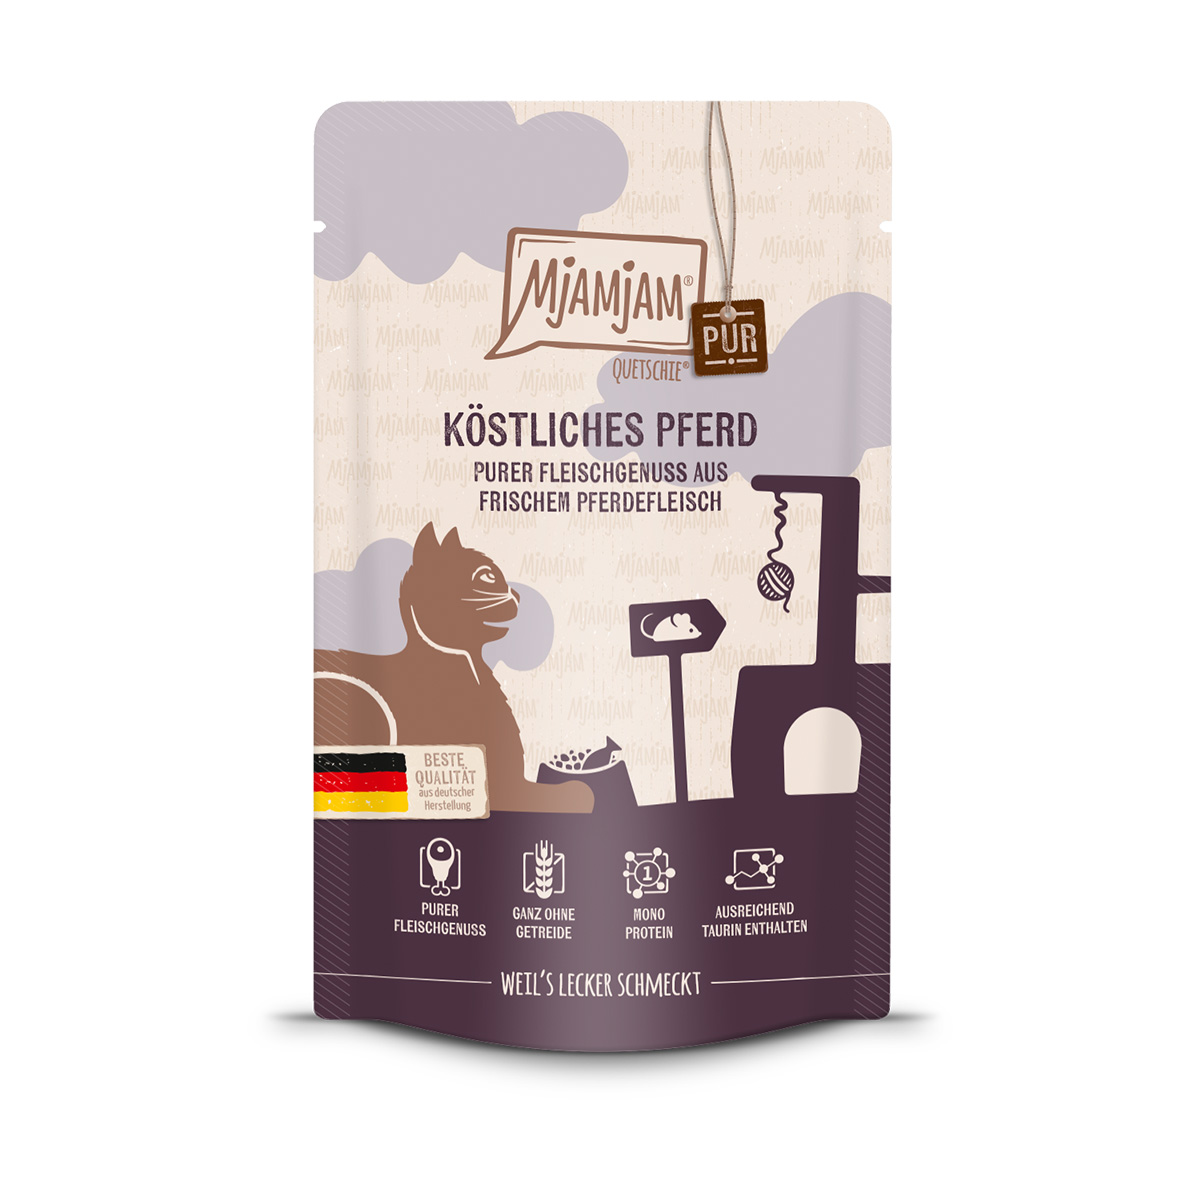 MjAMjAM – Quetschie – purer Fleischgenuss – köstliches Pferd pur 12x125g